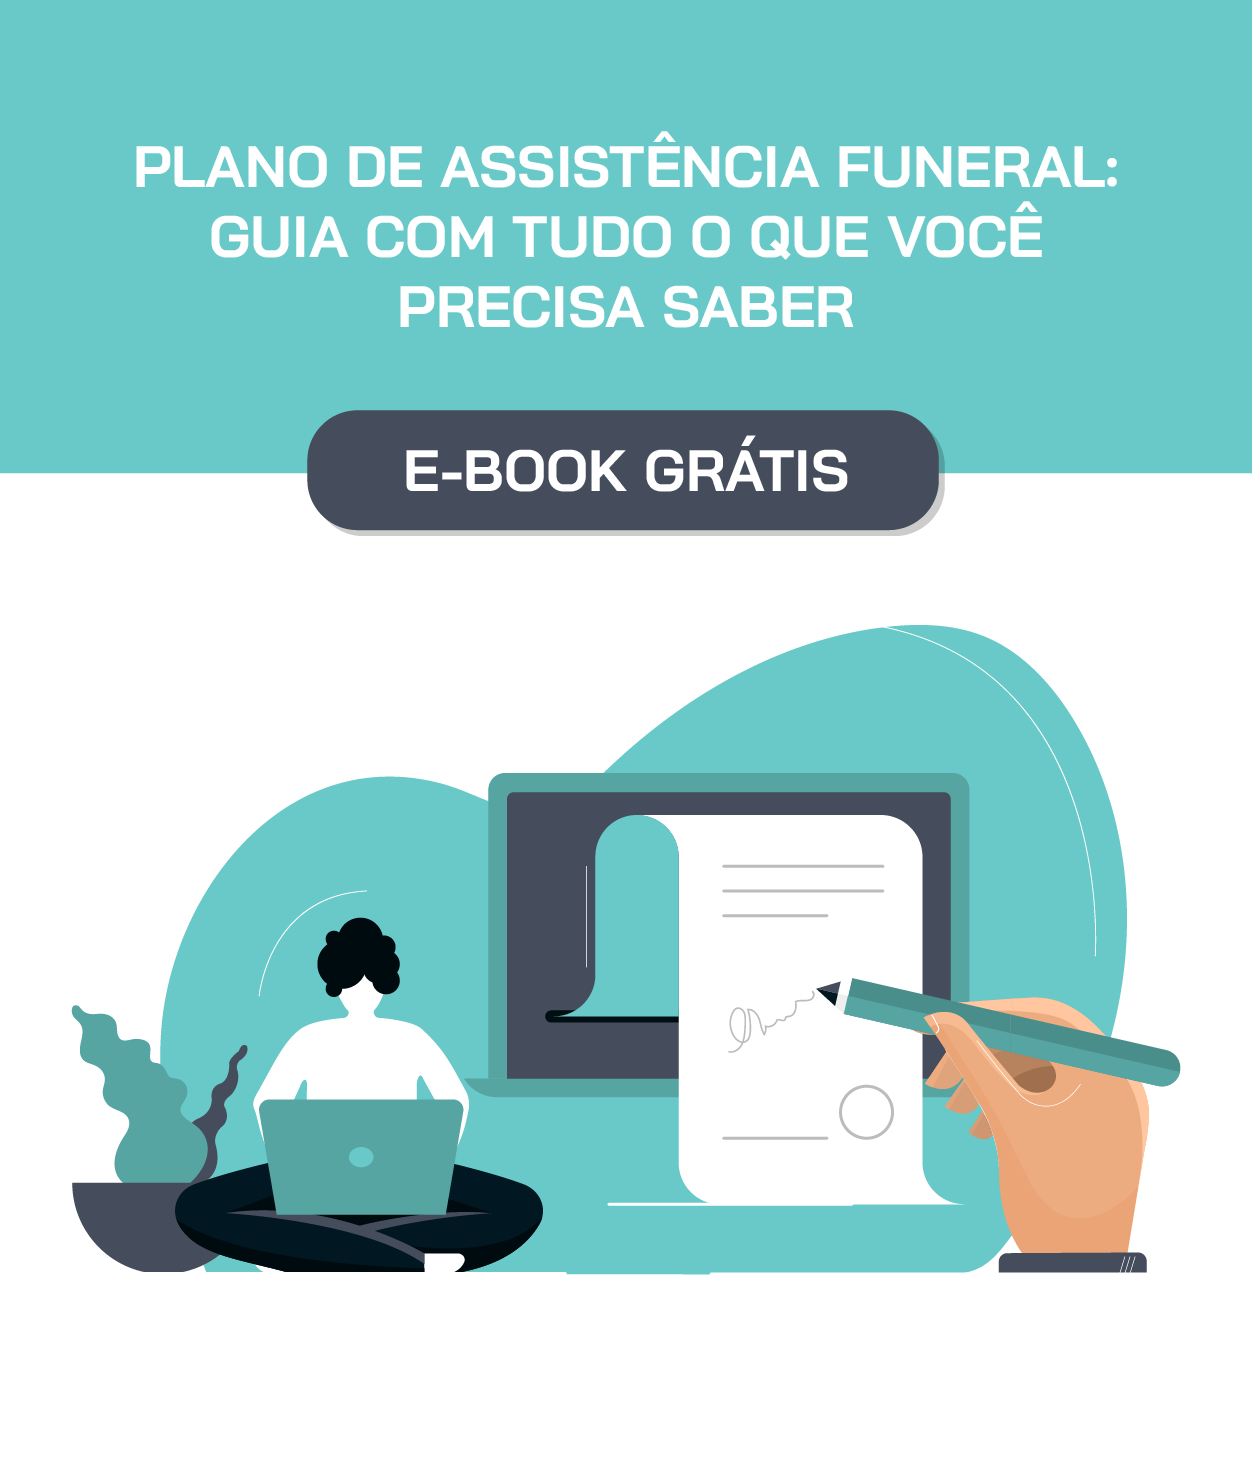 Plano de assistência funeral: guia com tudo o que você precisa saber